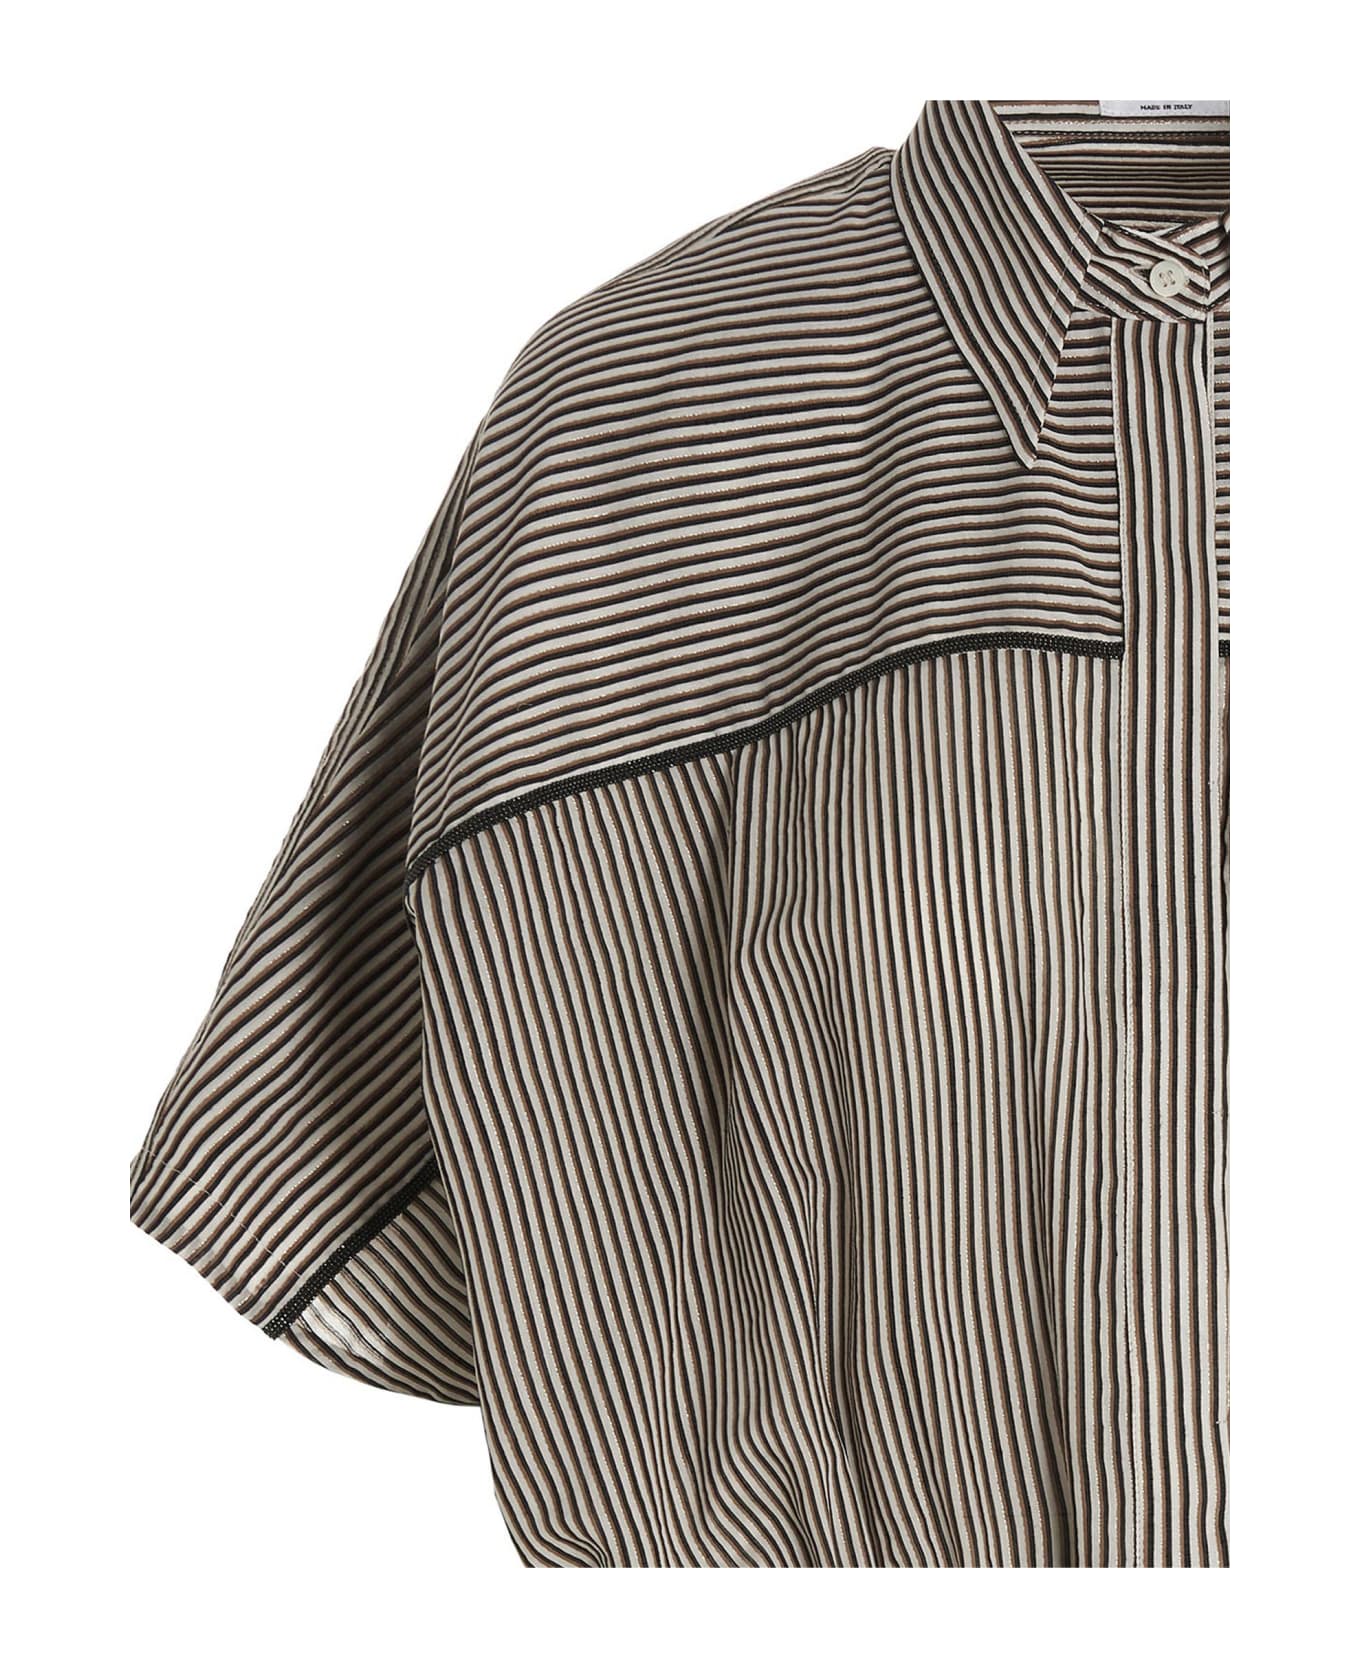 Brunello Cucinelli Cropped Striped Shirt - Multicolor